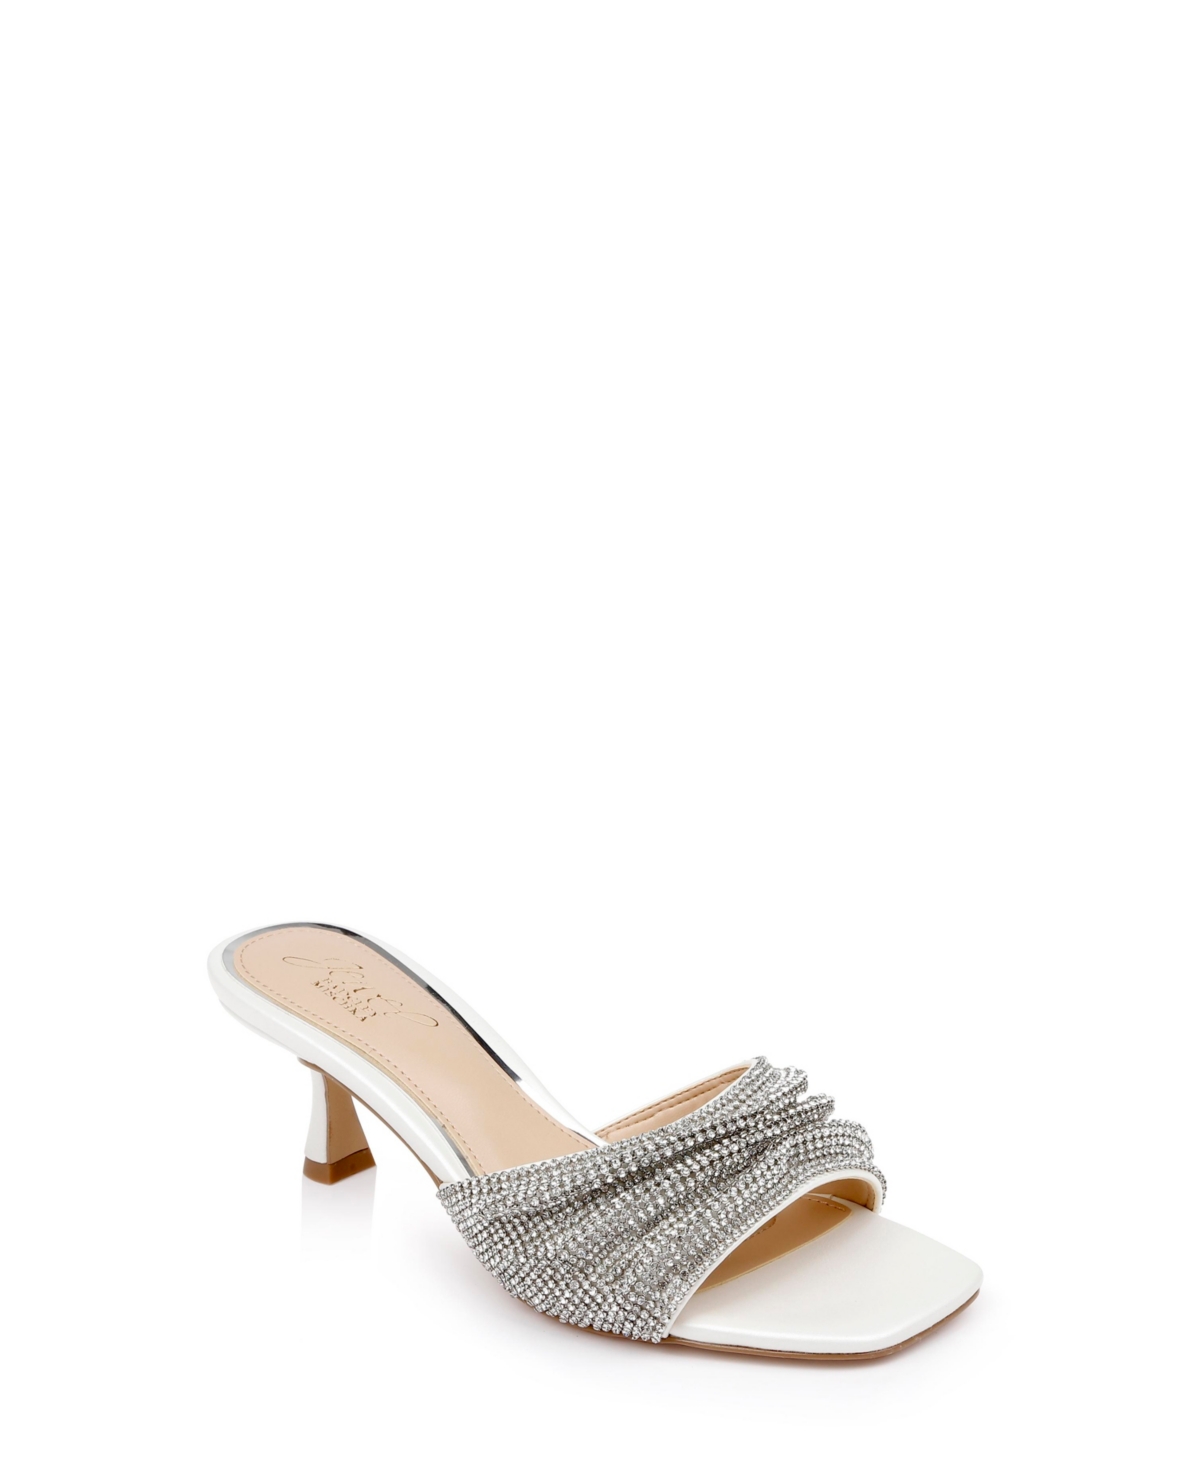 Women's Humor Kitten Heel Slide Evening Sandals - White Pearlized